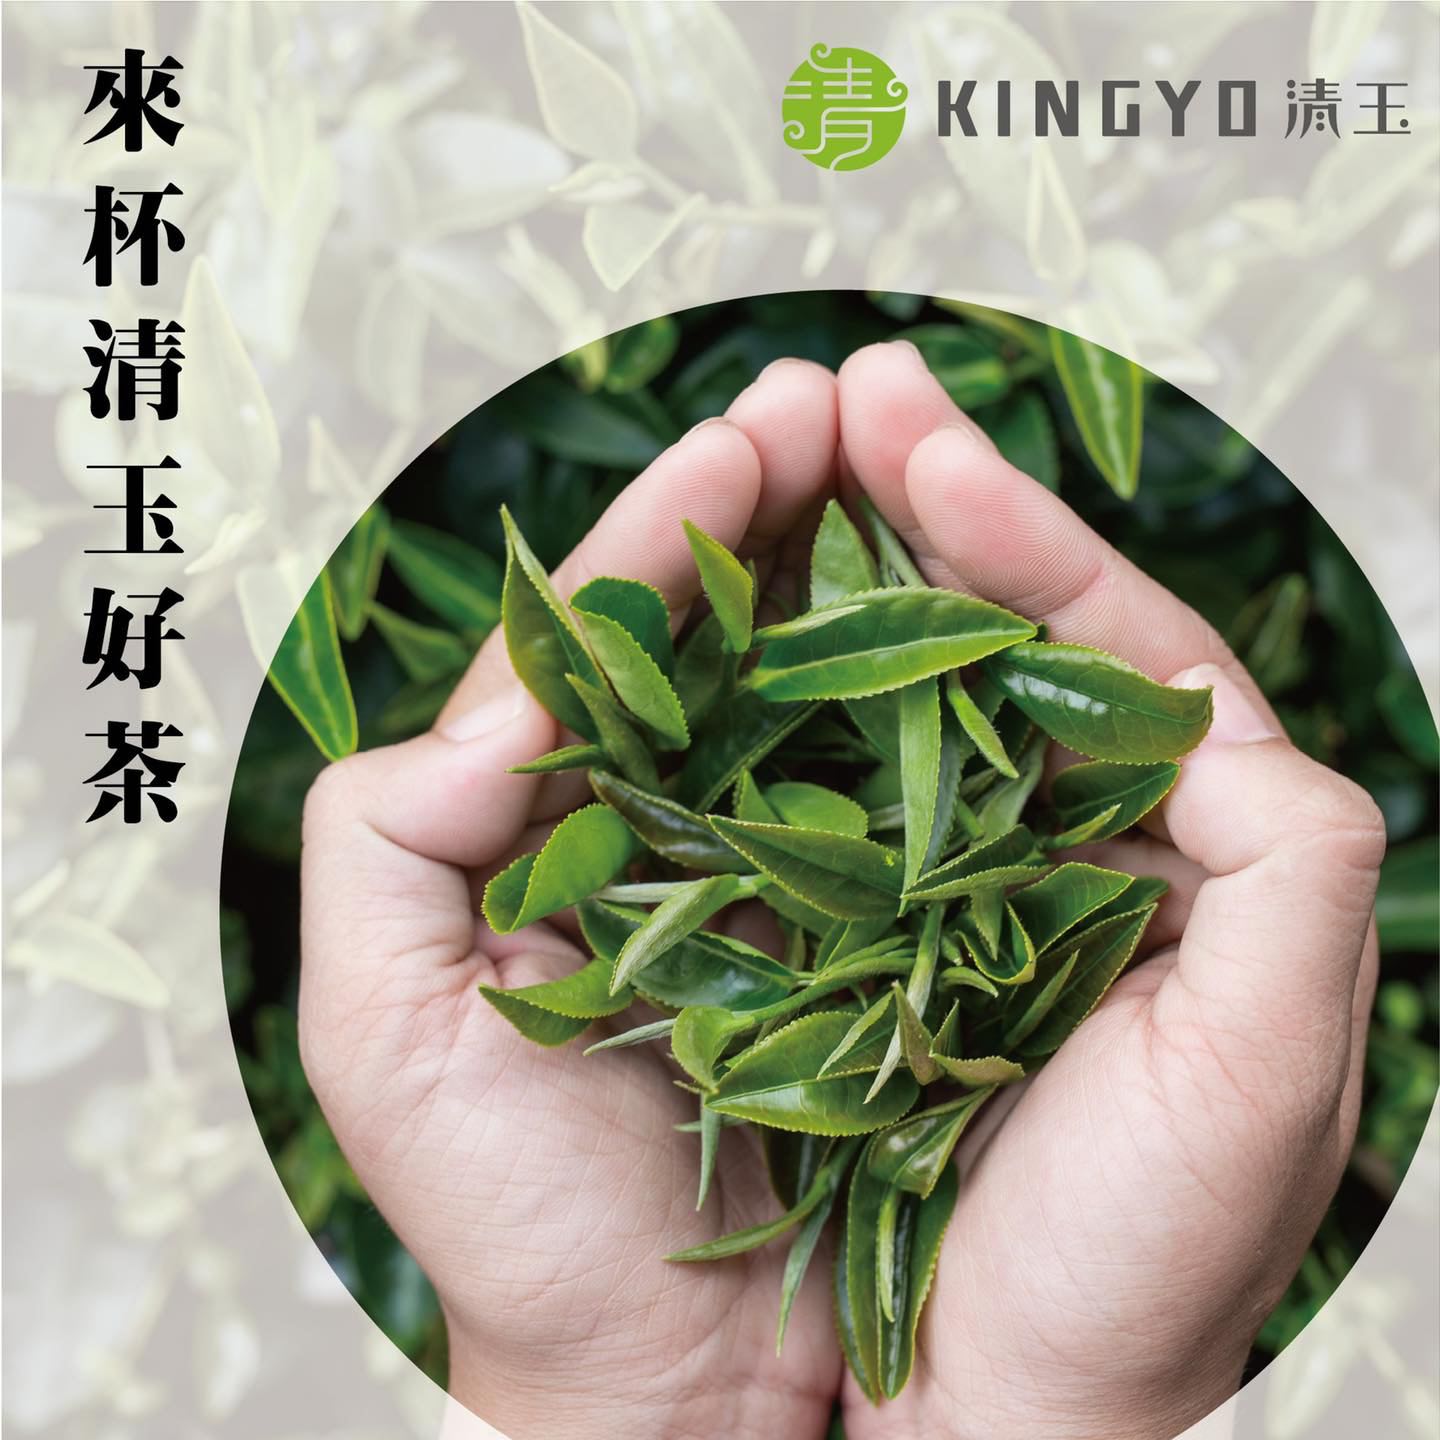 清玉好茶Kingyo的特許經營香港區加盟店項目3